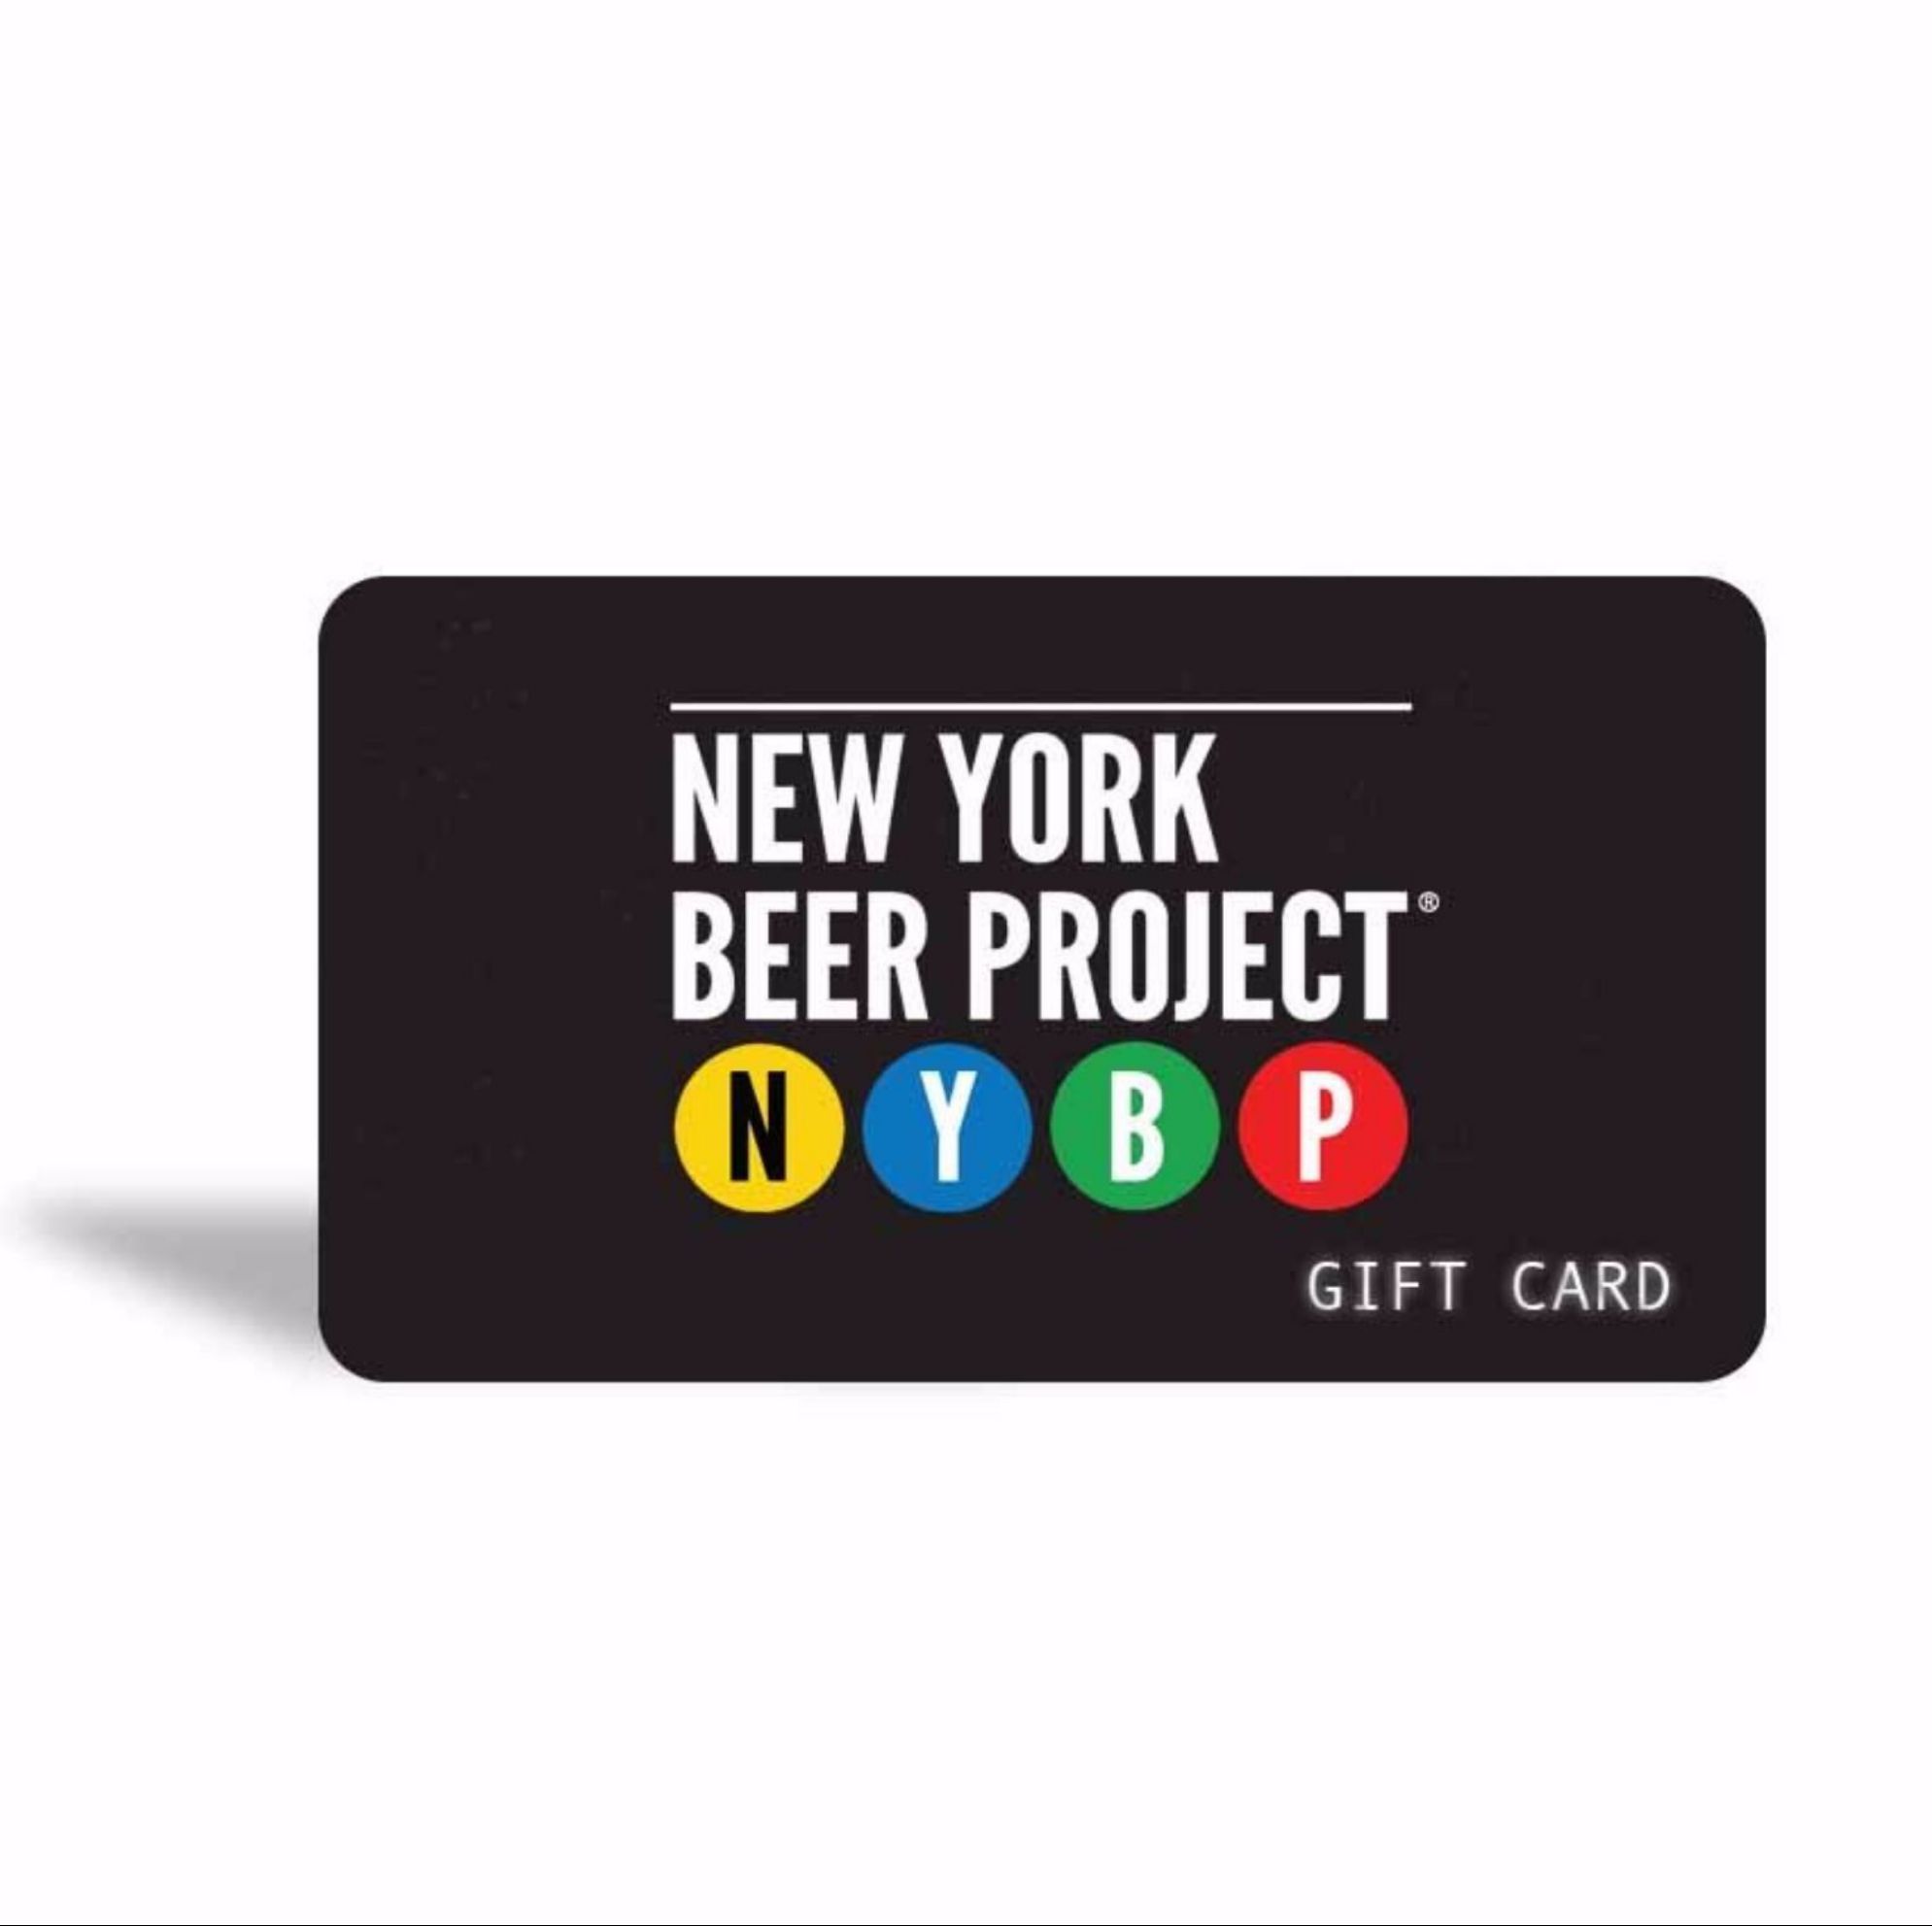 NYBP gift card